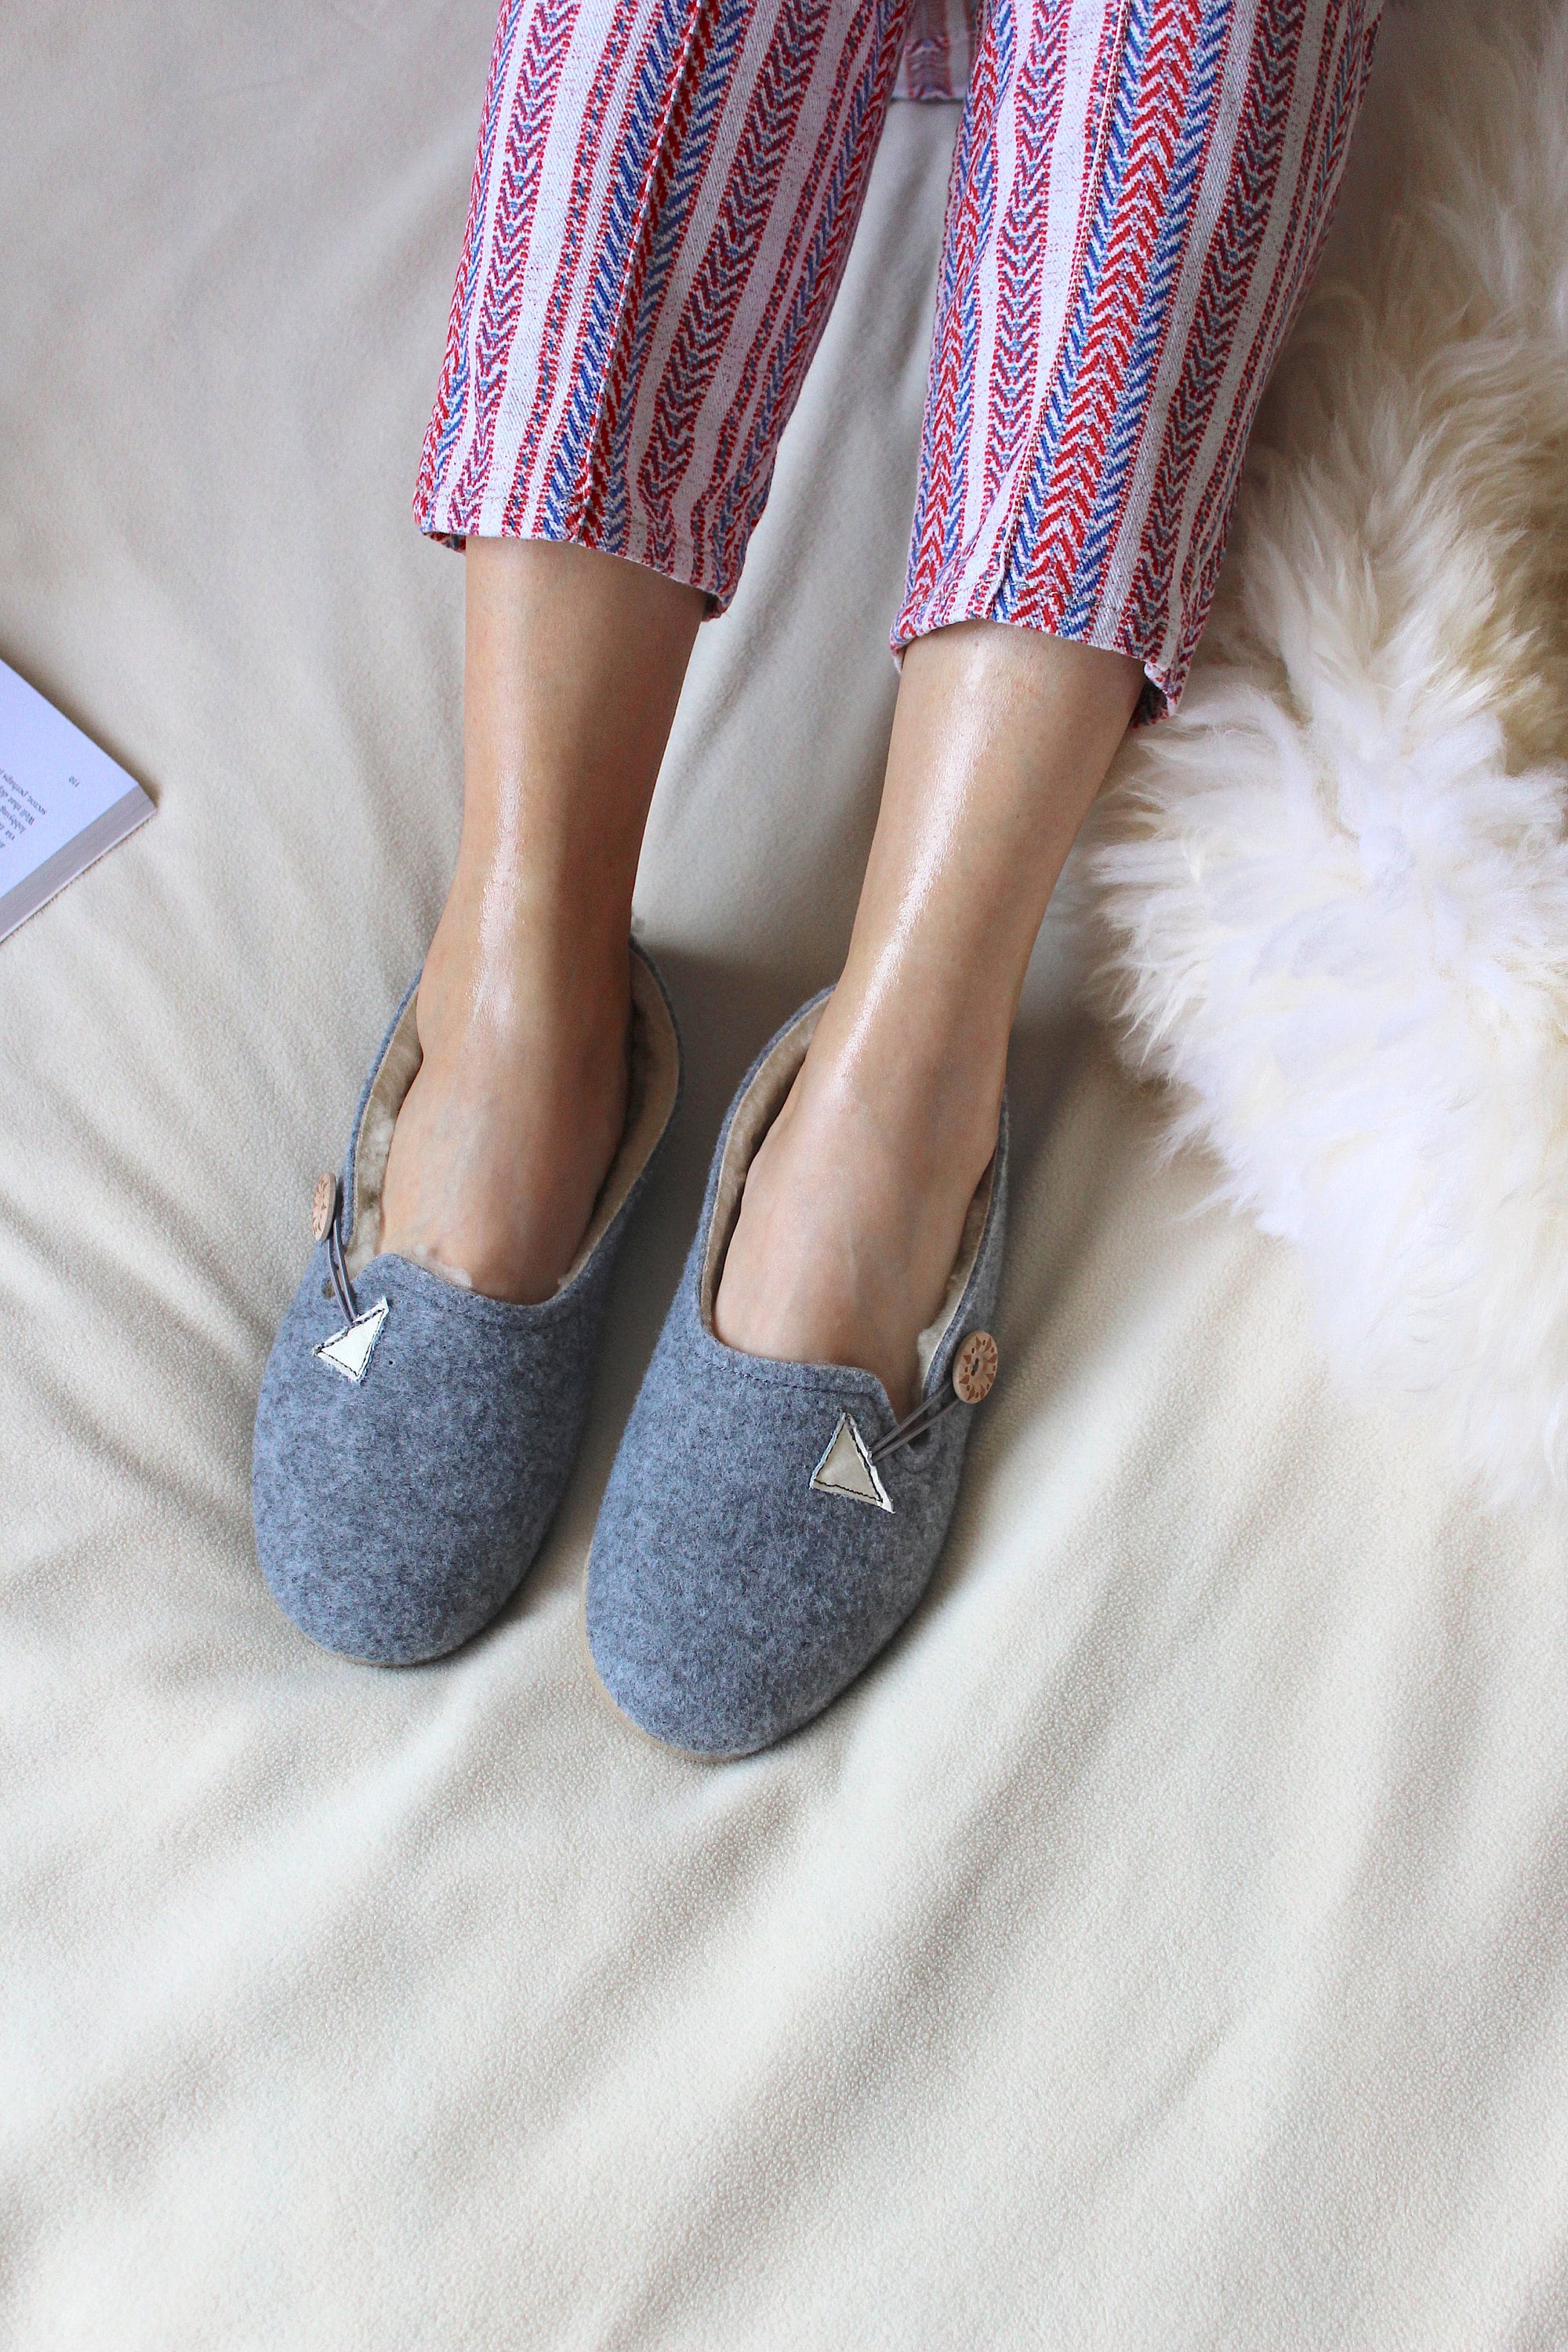 Felt Women's Grey Wool Slippers - Etsy UK